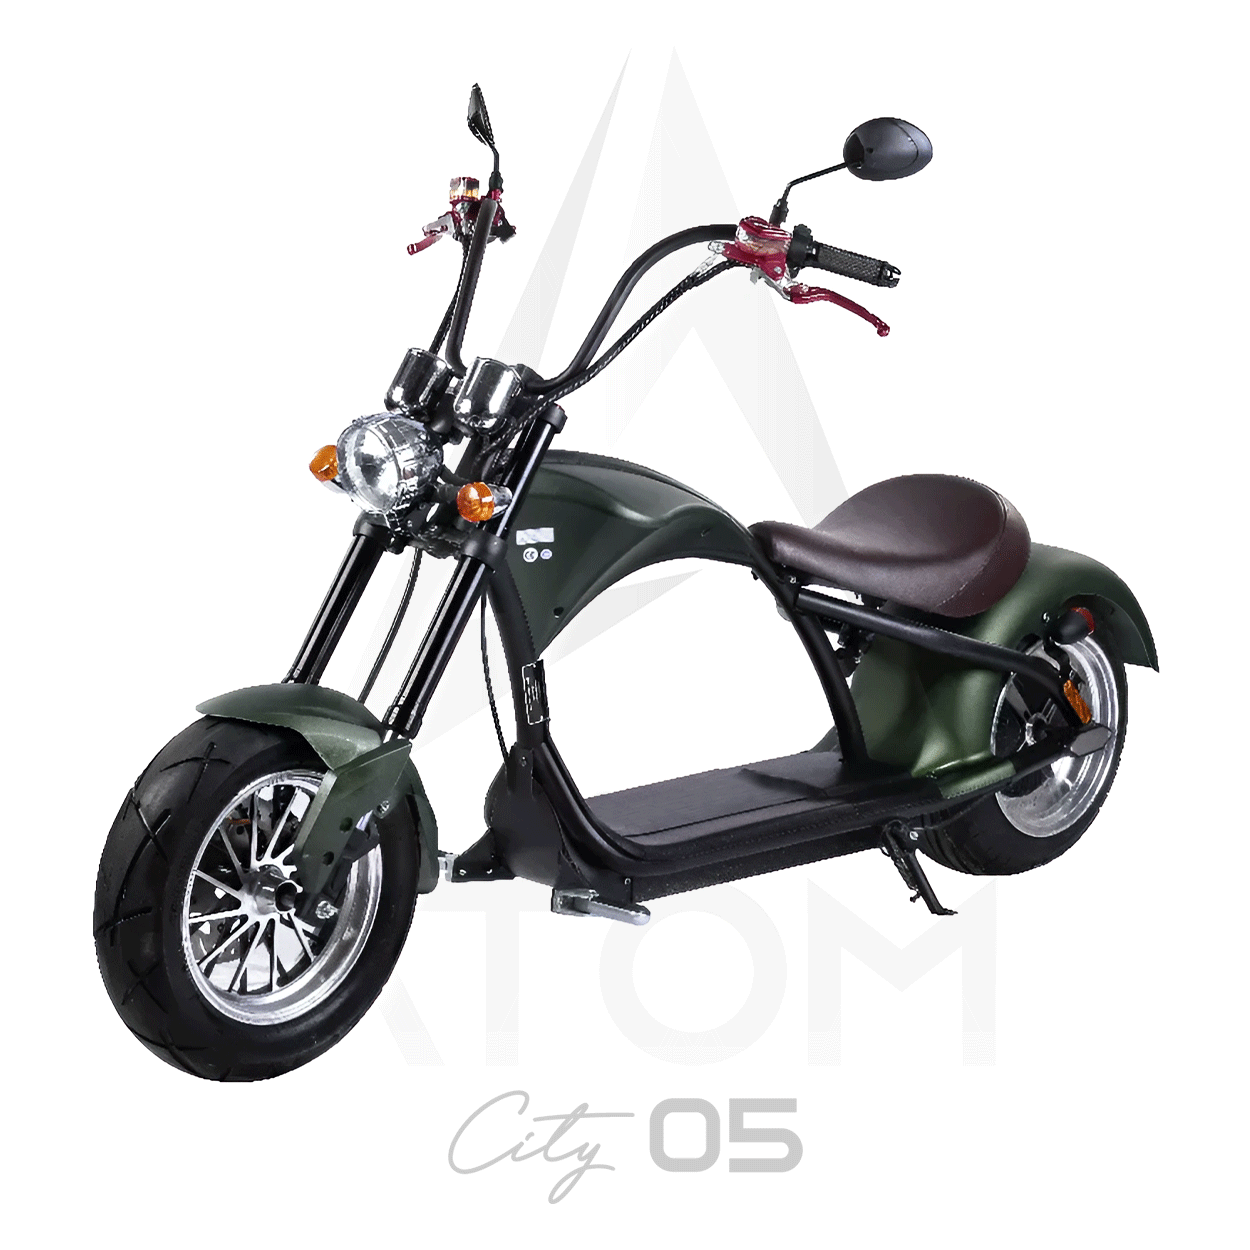 Scooter électrique, Atom City 05 | 2000 W | 50 cc | V-max 45 km/h | Autonomie 80 km - Atom Motors